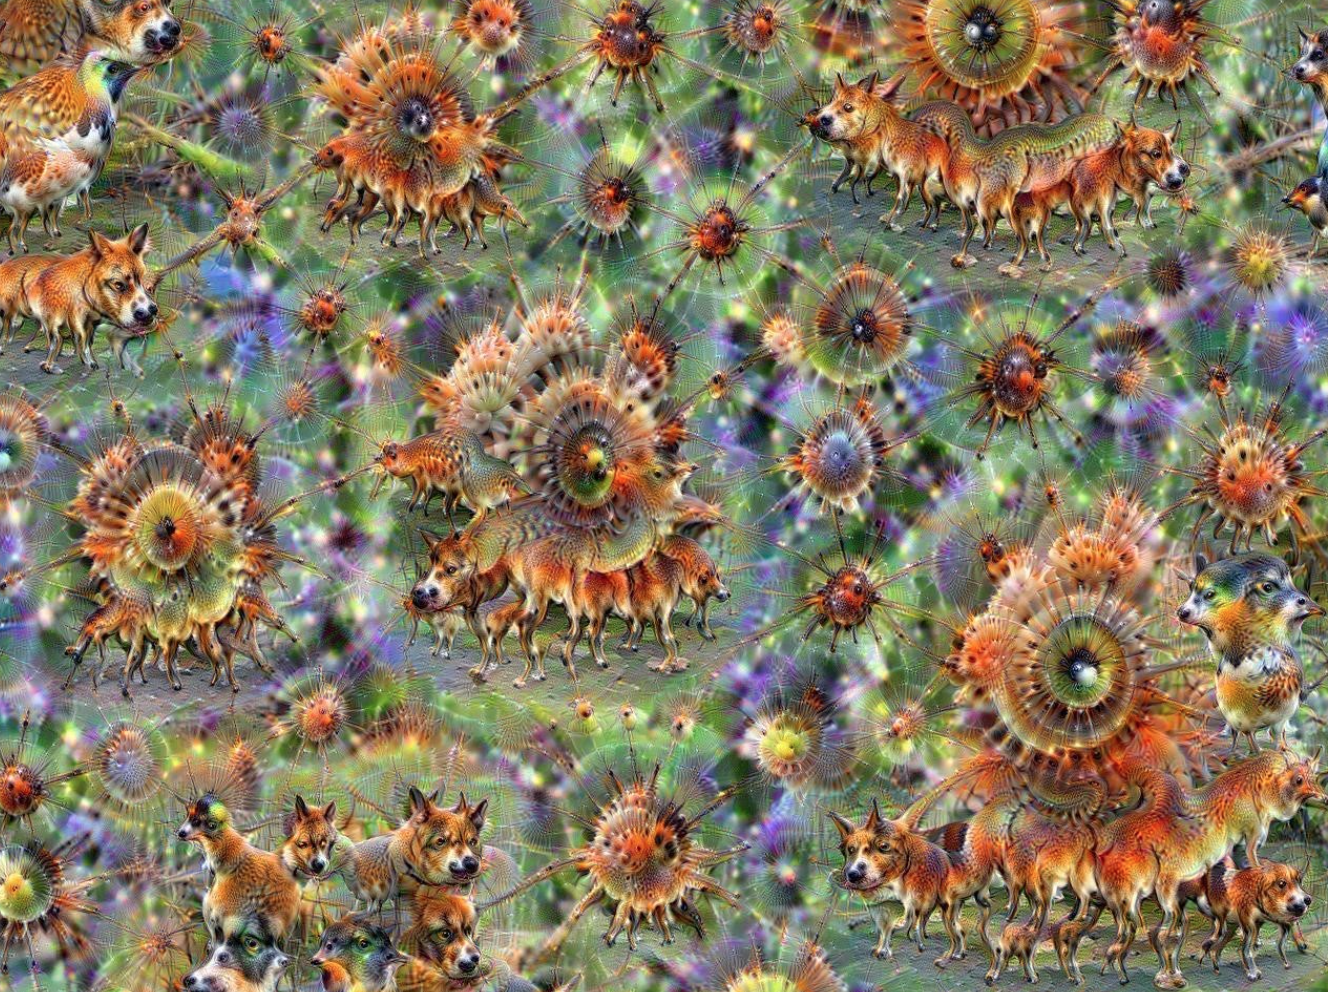 Une multitude d’images d’un canidé roux se superposent en rosettes. Le résultat fait penser à des fractales.